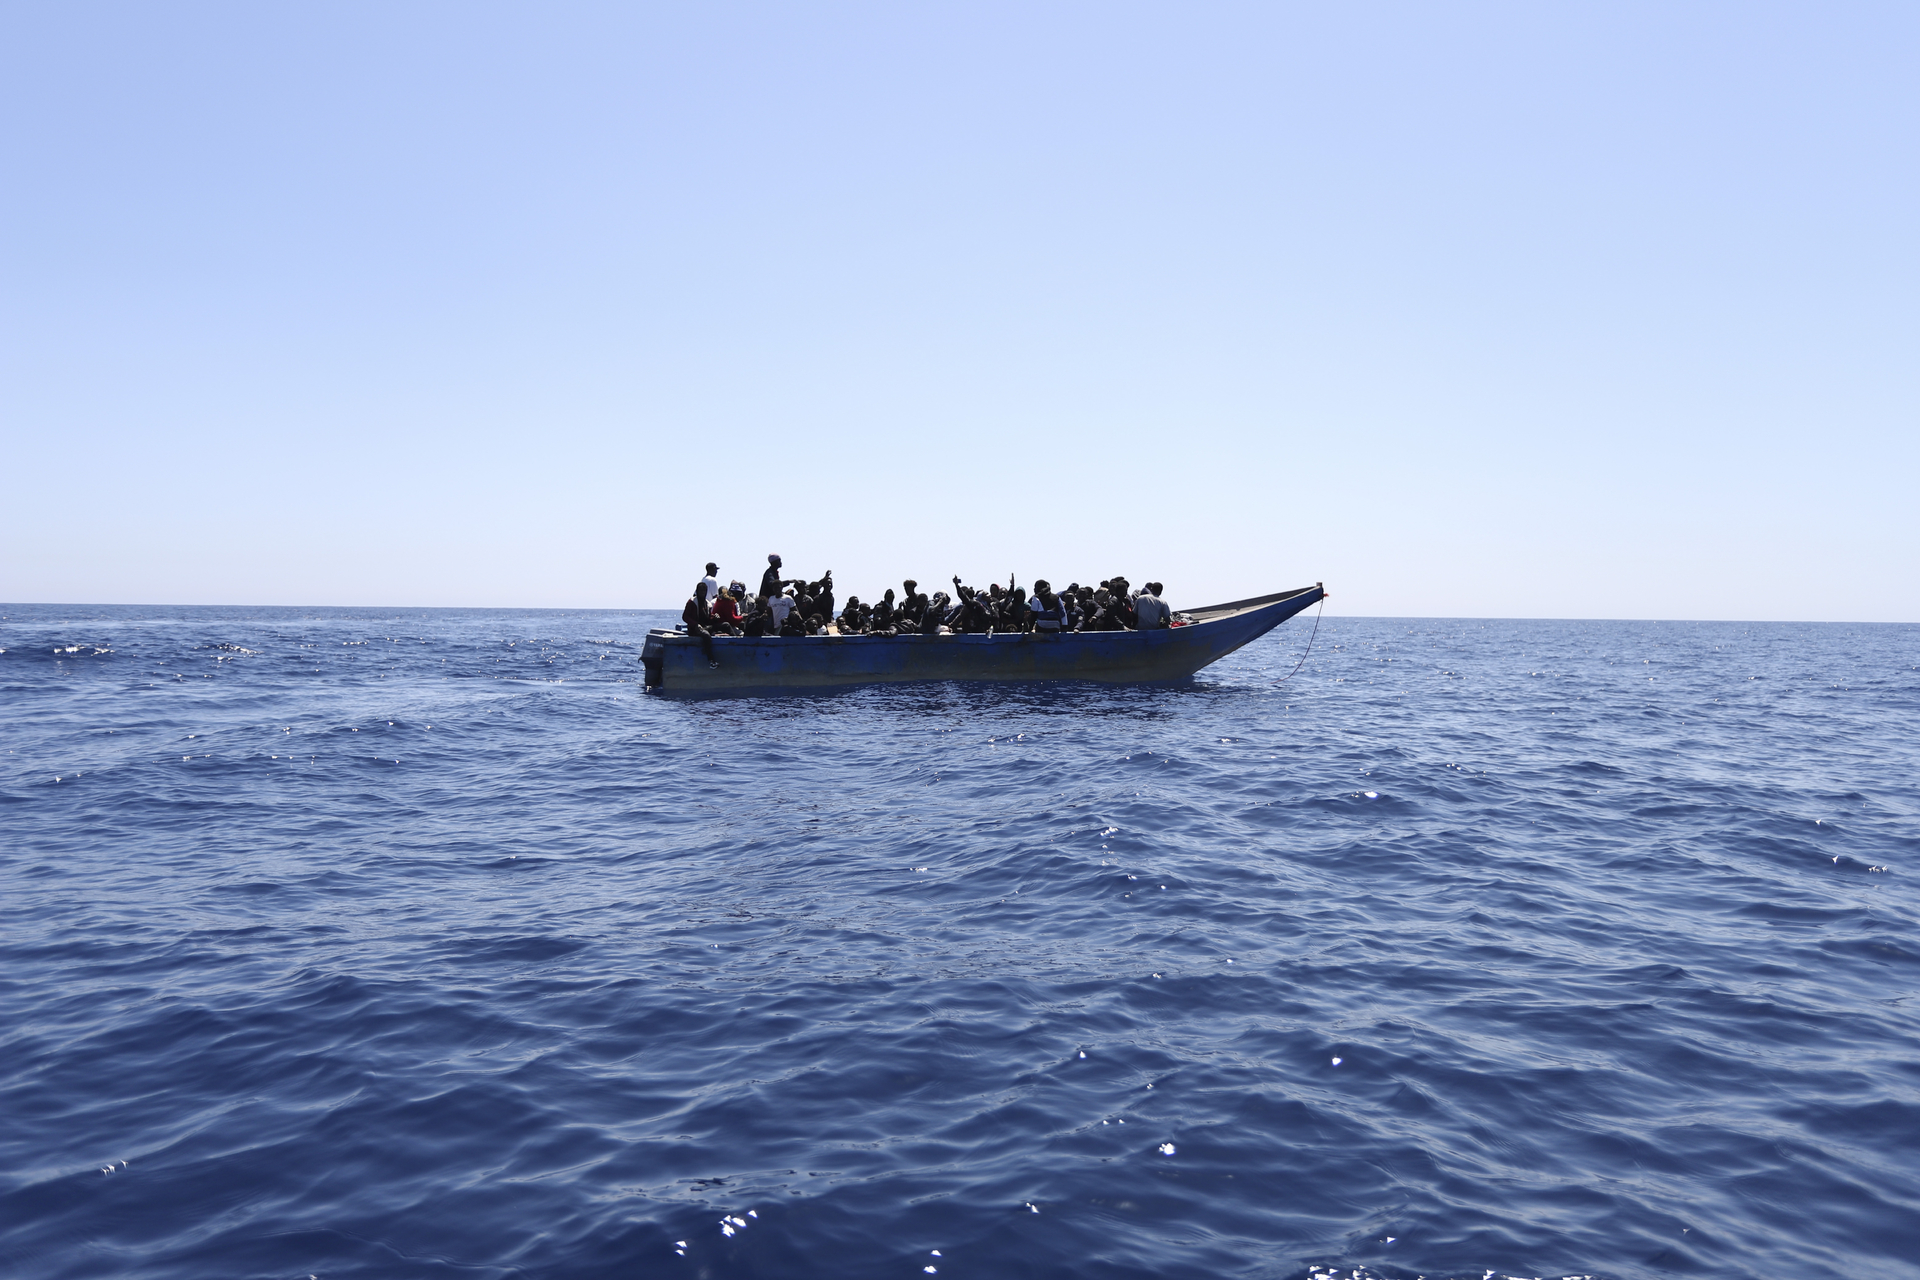 Los rescates en el Mediterráneo no aumentan las migraciones, según un estudio